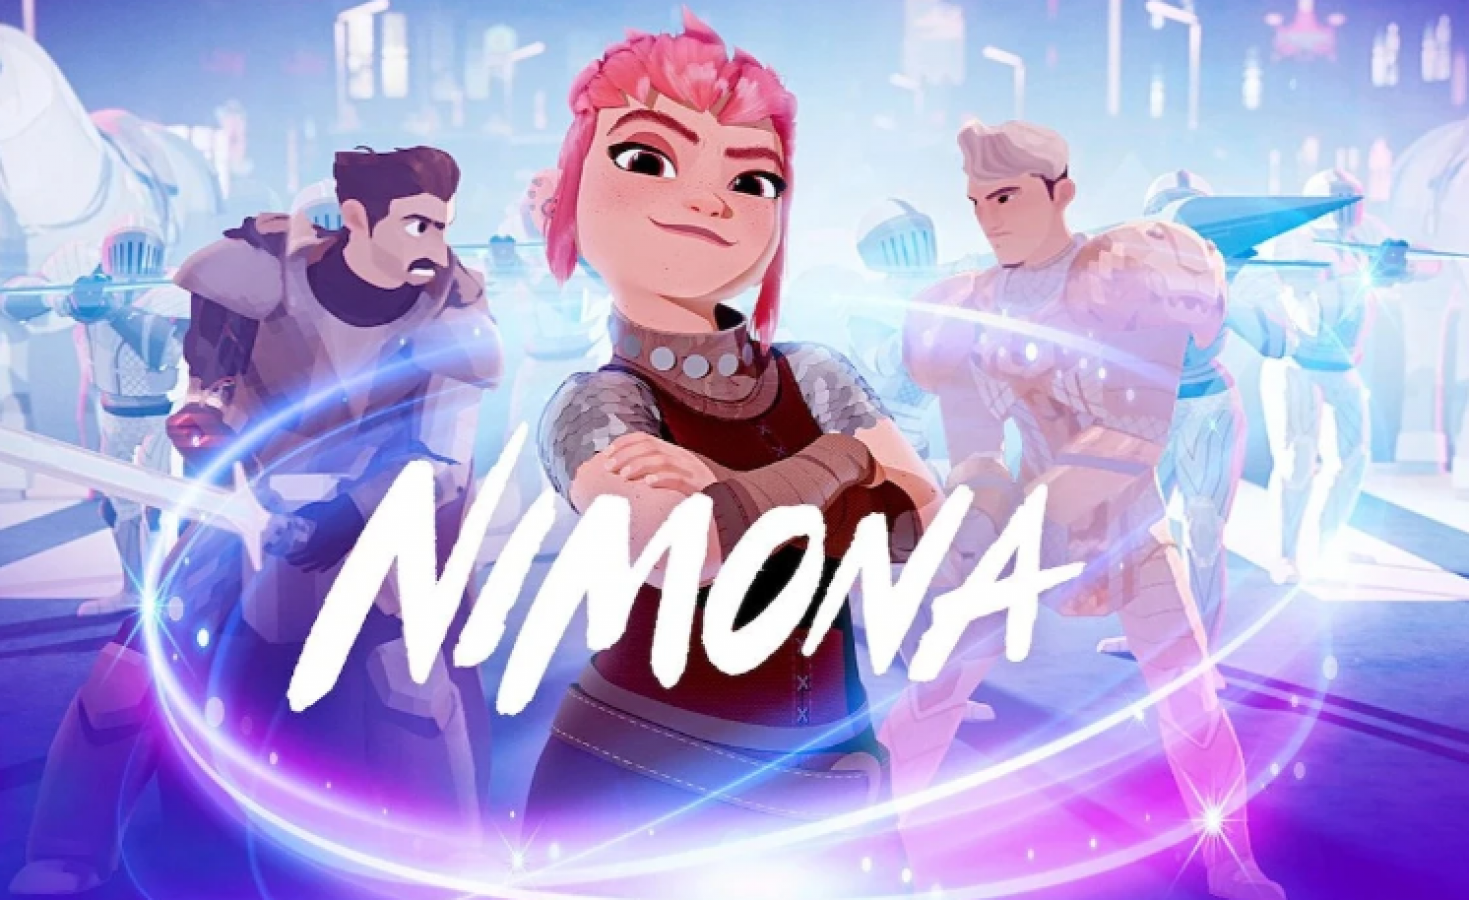 Nimona subverte a fantasia em trailer incrível na Netflix